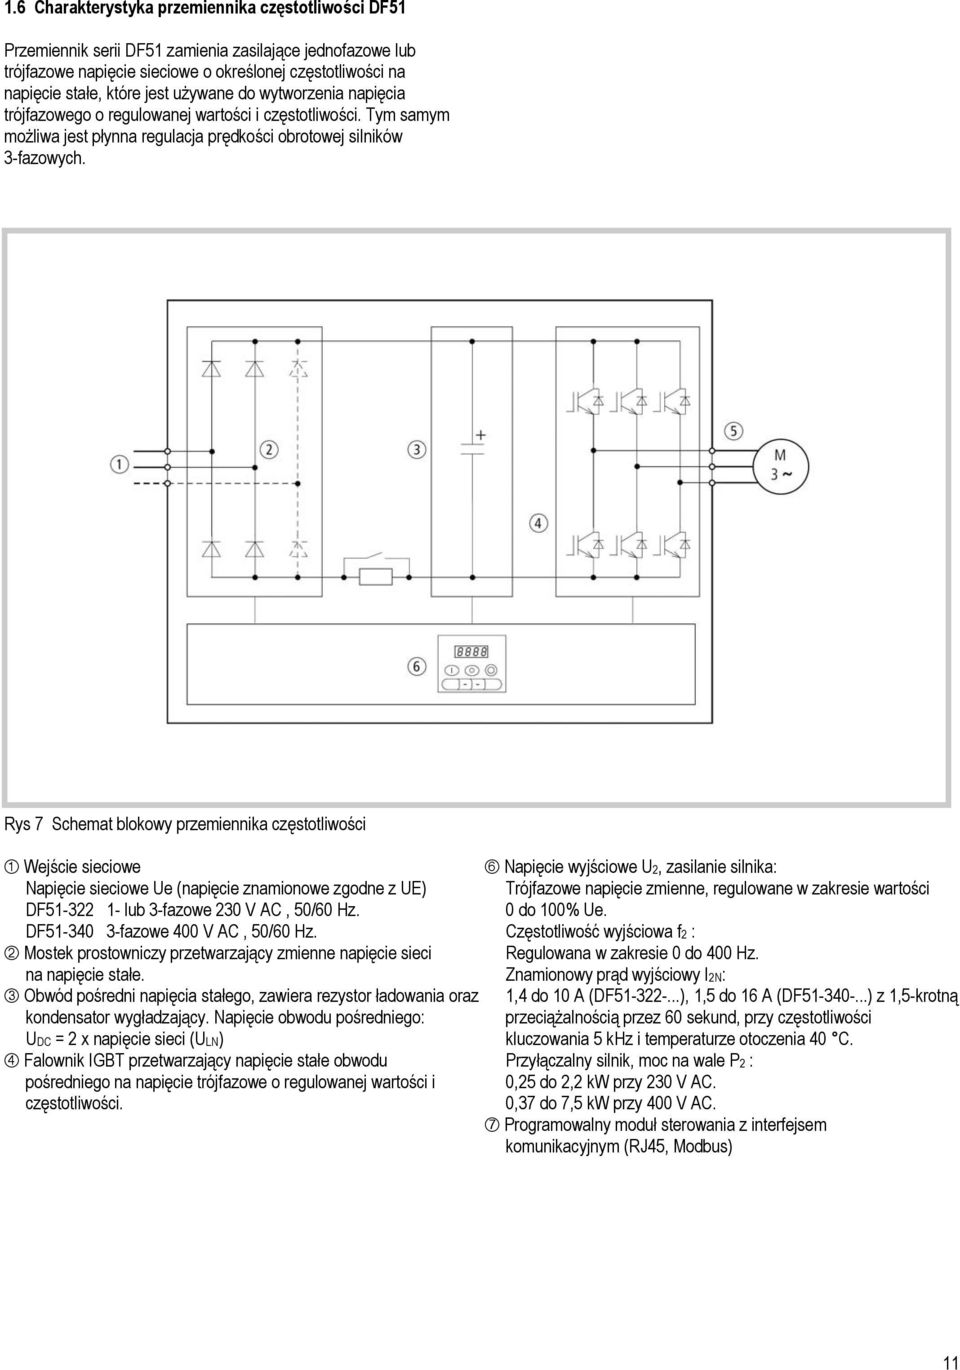 Rys 7 Schemat funkcjonalny przemiennika częstotliwości DF51 Rys 7 Schemat blokowy przemiennika częstotliwości Wejście sieciowe Napięcie wyjściowe U2, zasilanie silnika: Napięcie sieciowe Ue (napięcie